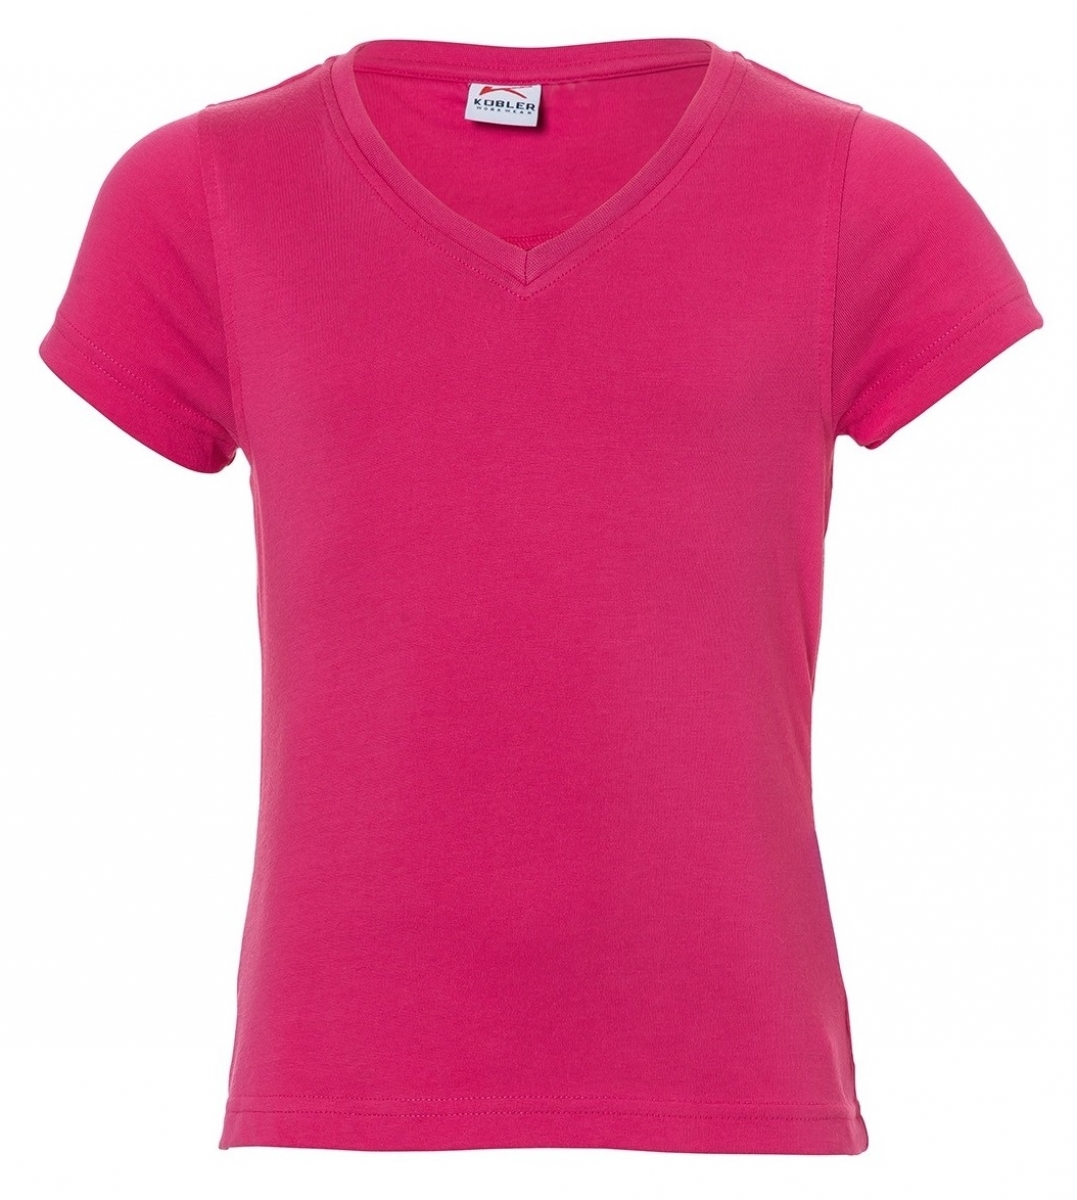 KBLER-Workwear-Kinder-T-Shirts, 160 g/m, pink